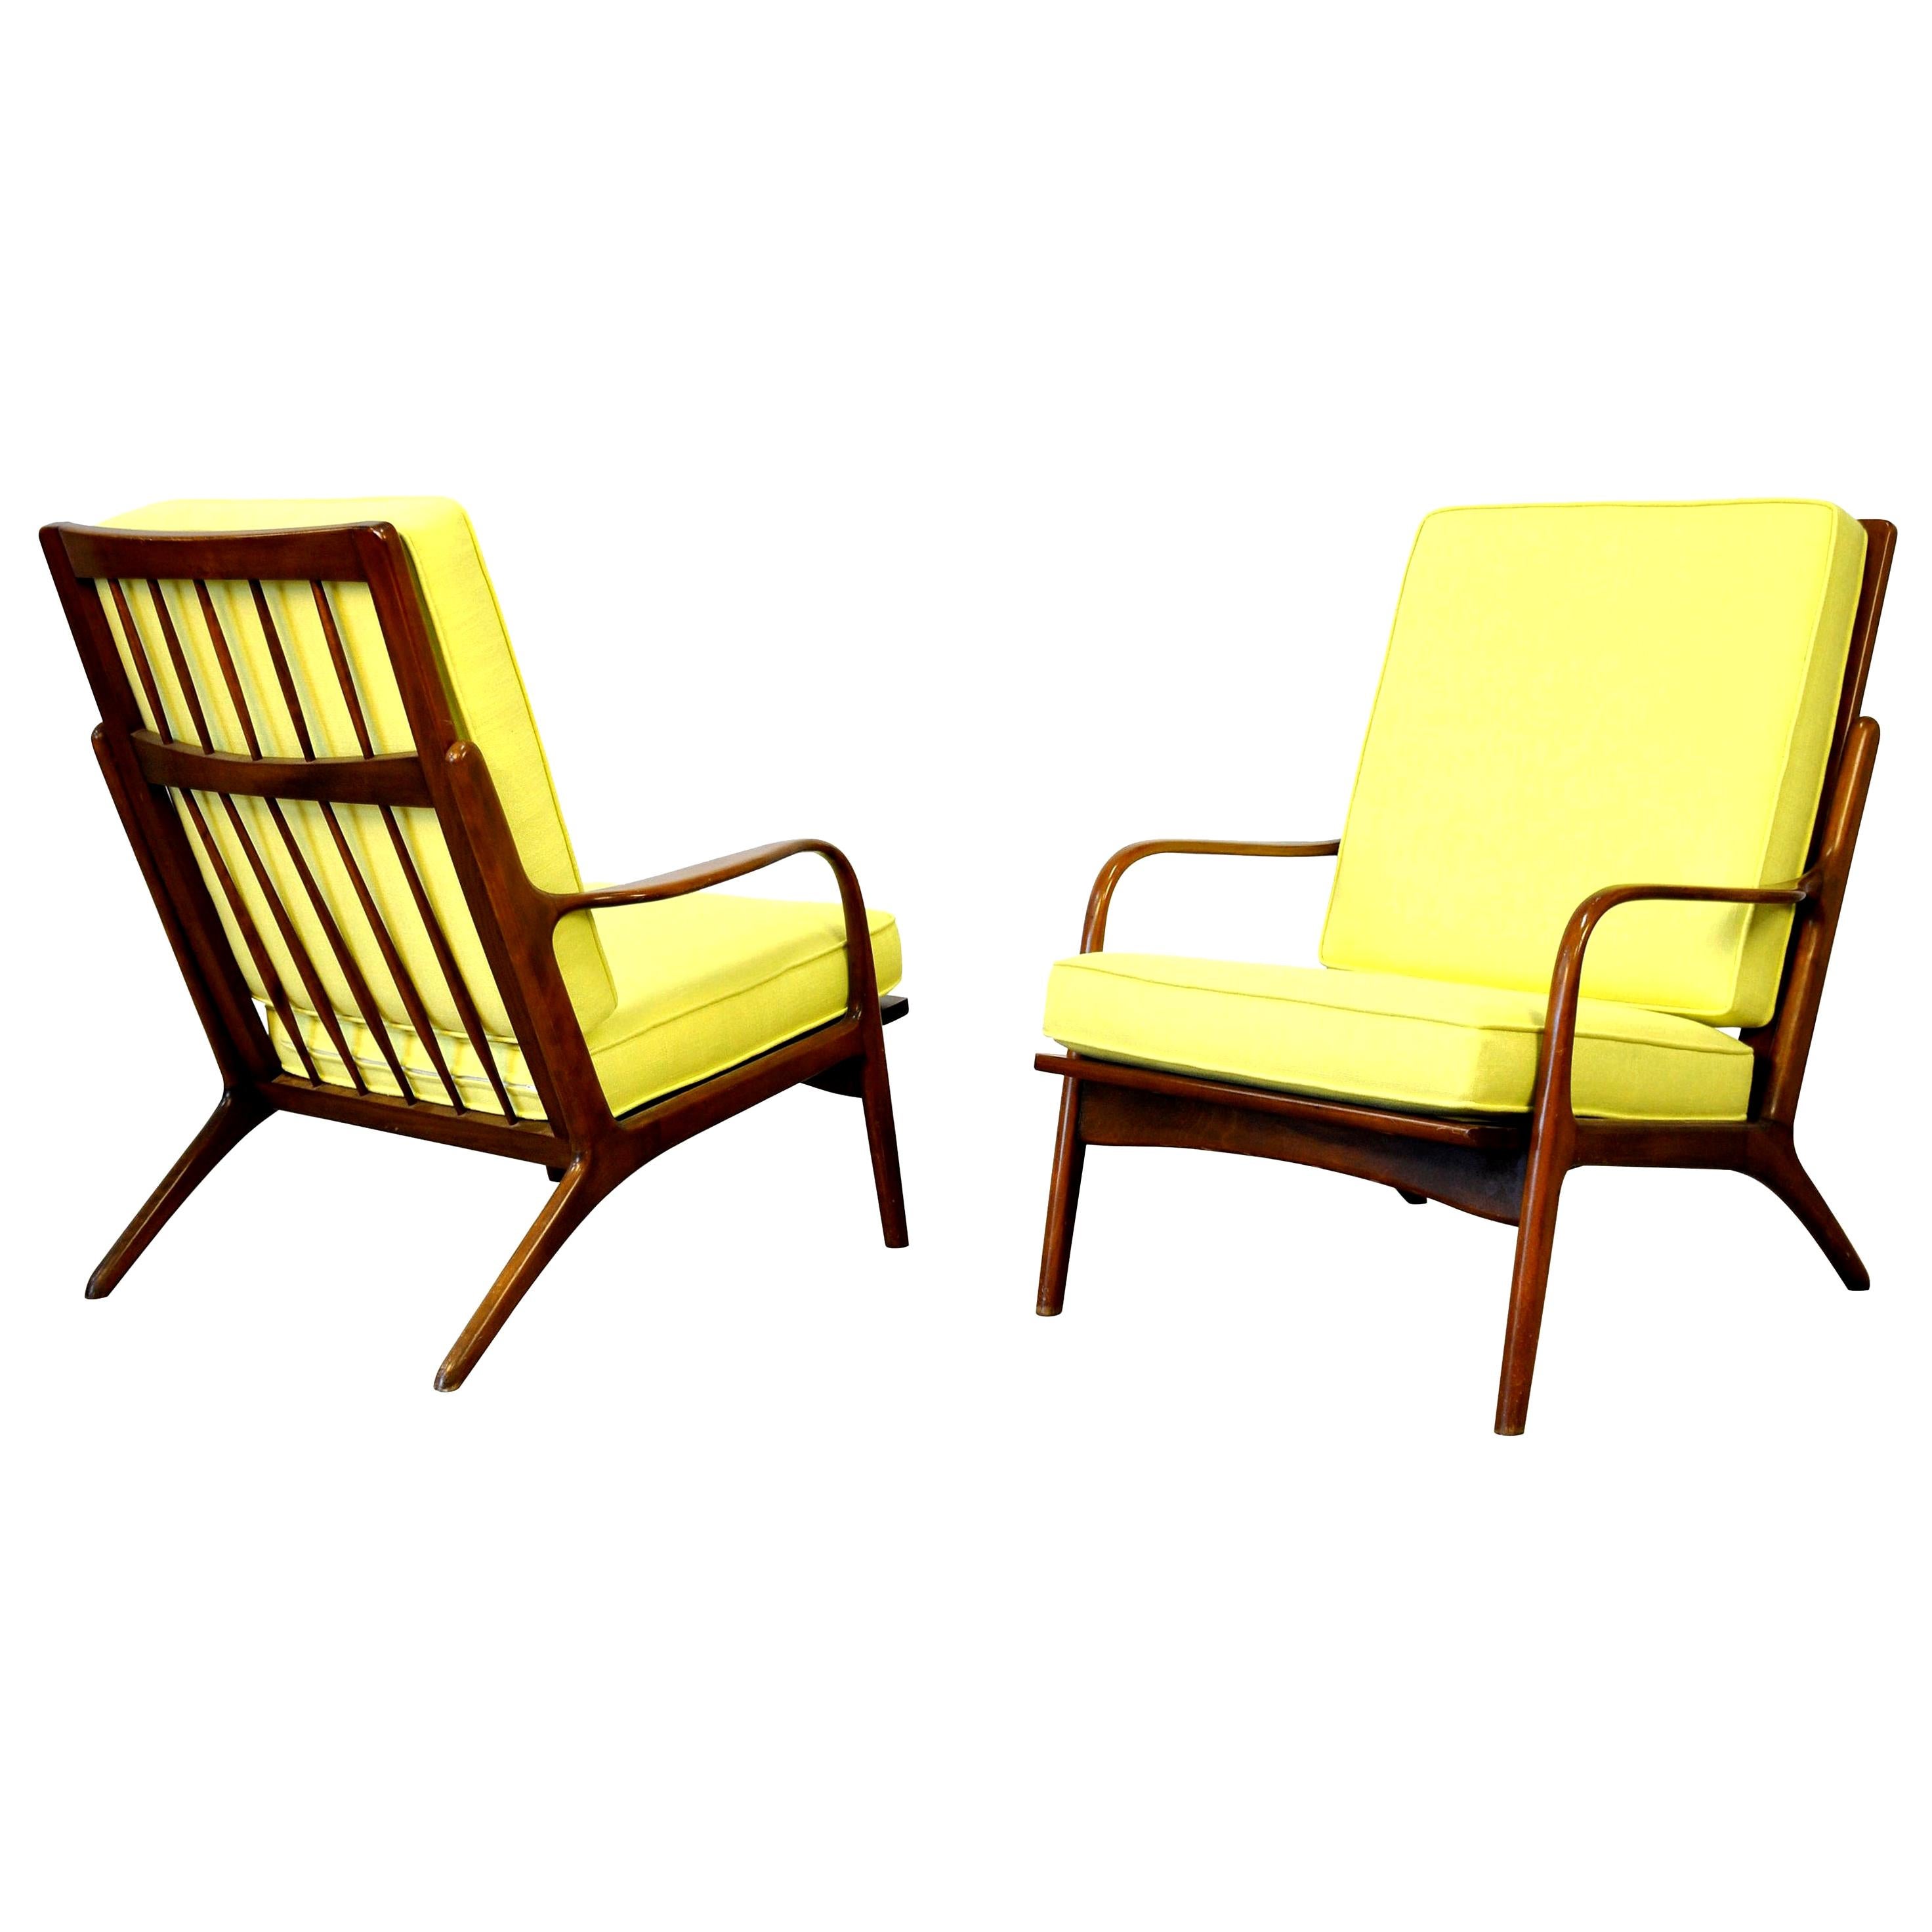 Pair of Danish Modern Yellow Lounge Chairs